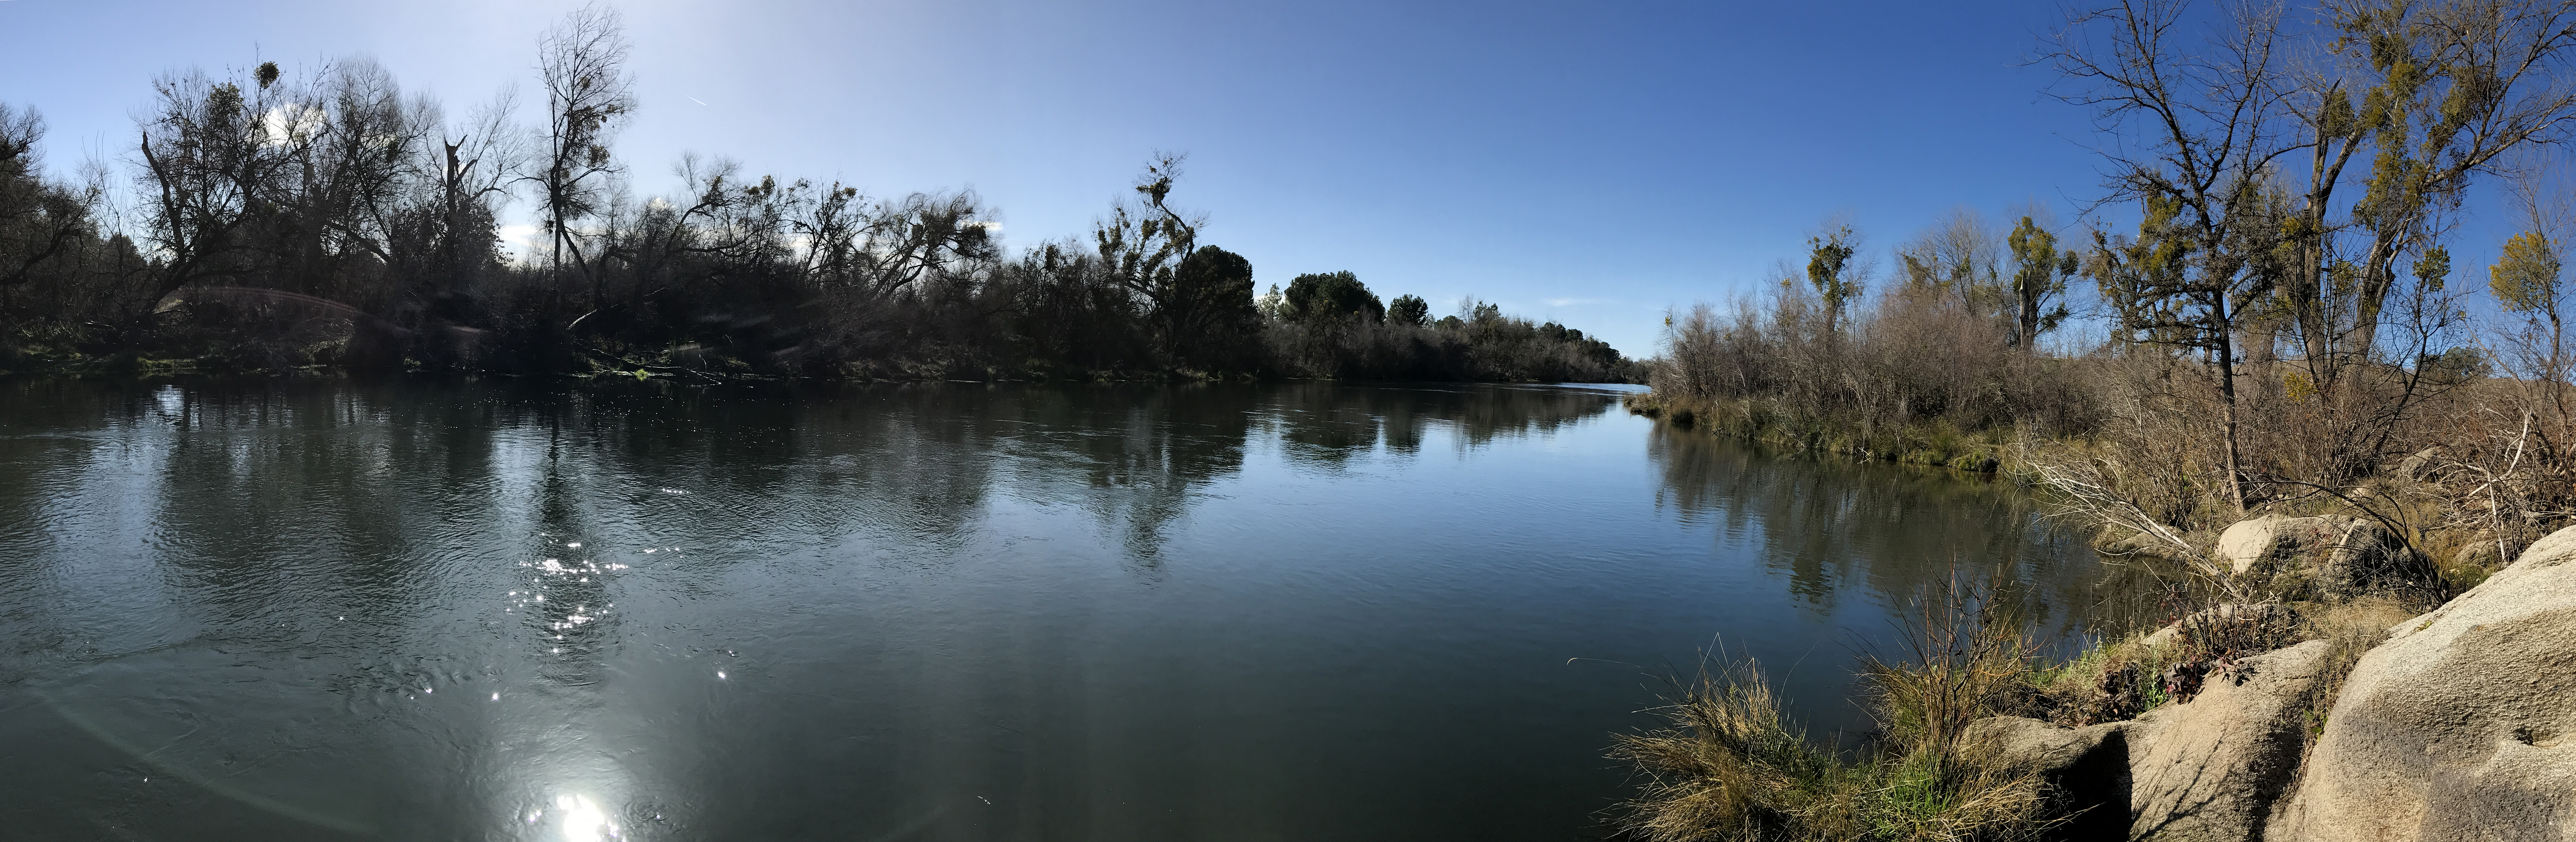 River shot of the San Joaquin River